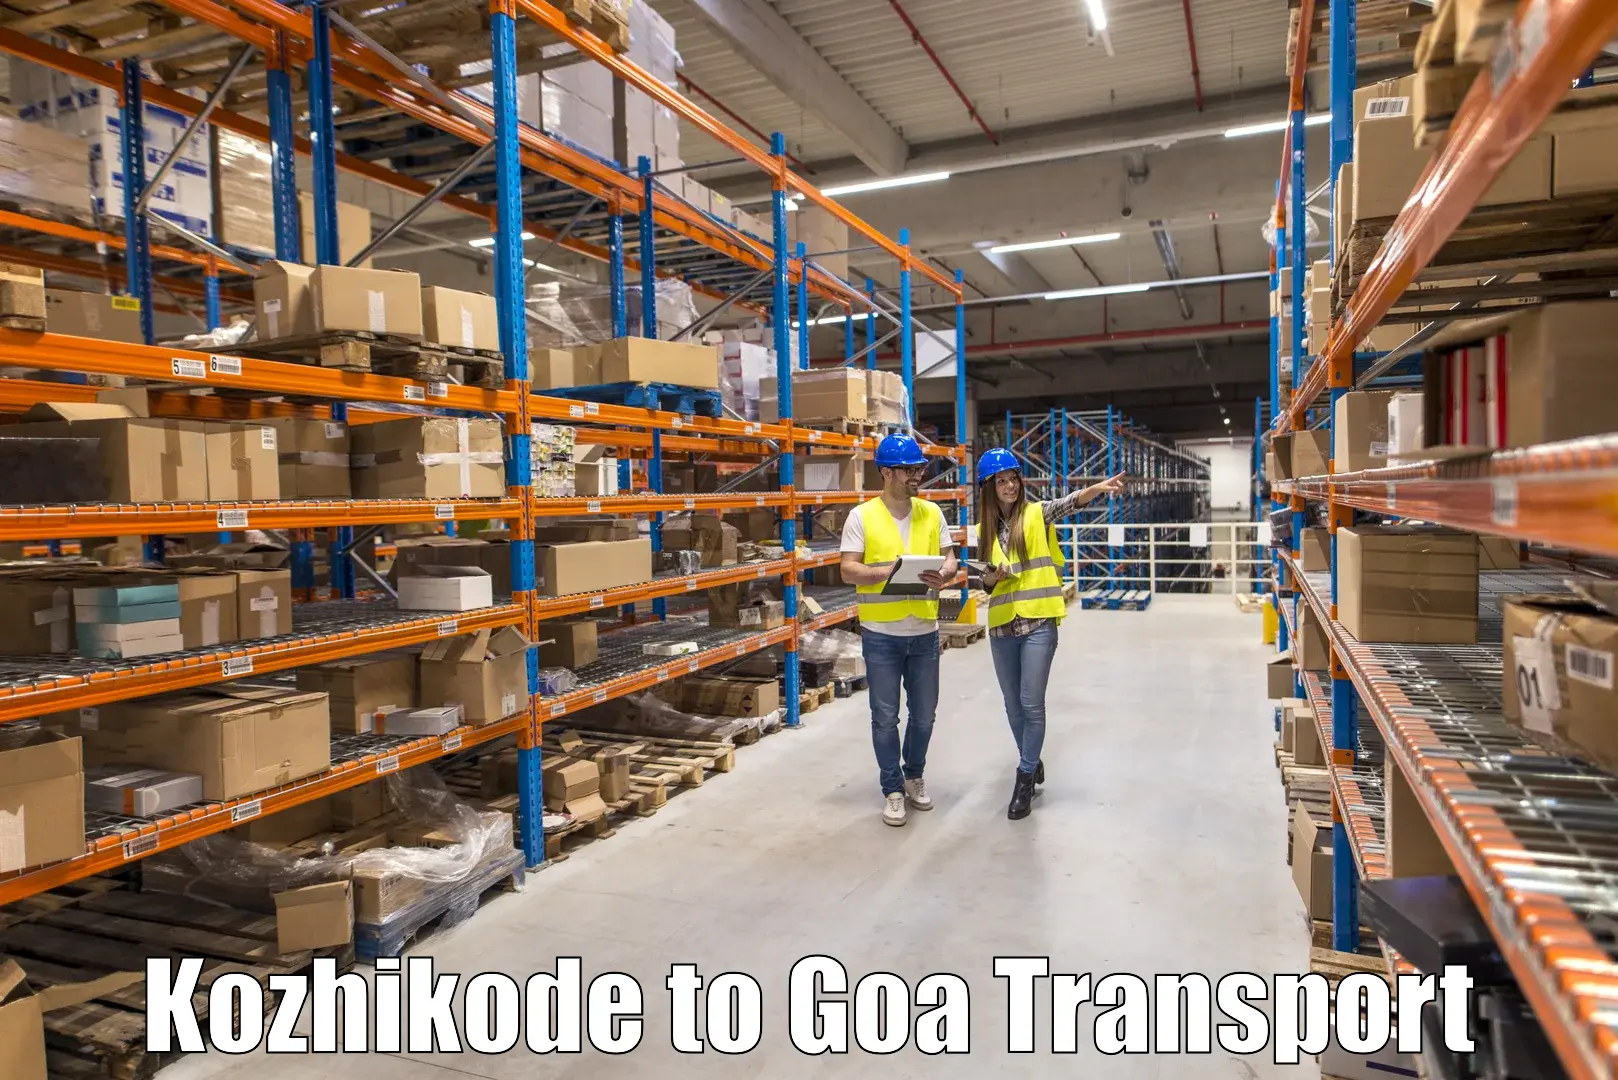 Transport in sharing Kozhikode to Vasco da Gama